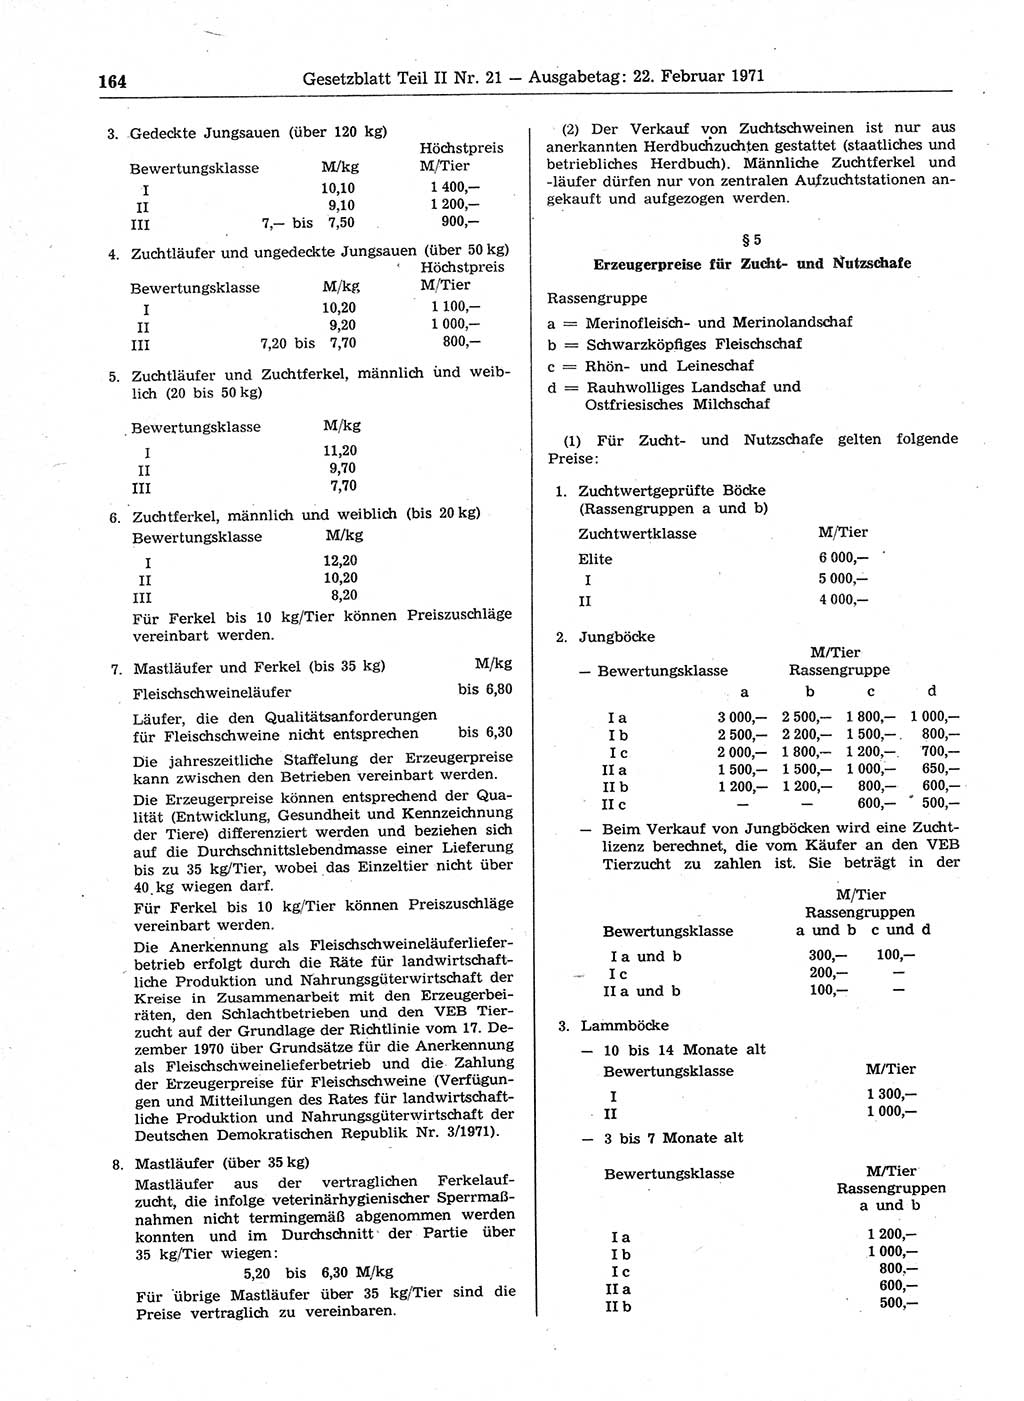 Gesetzblatt (GBl.) der Deutschen Demokratischen Republik (DDR) Teil ⅠⅠ 1971, Seite 164 (GBl. DDR ⅠⅠ 1971, S. 164)